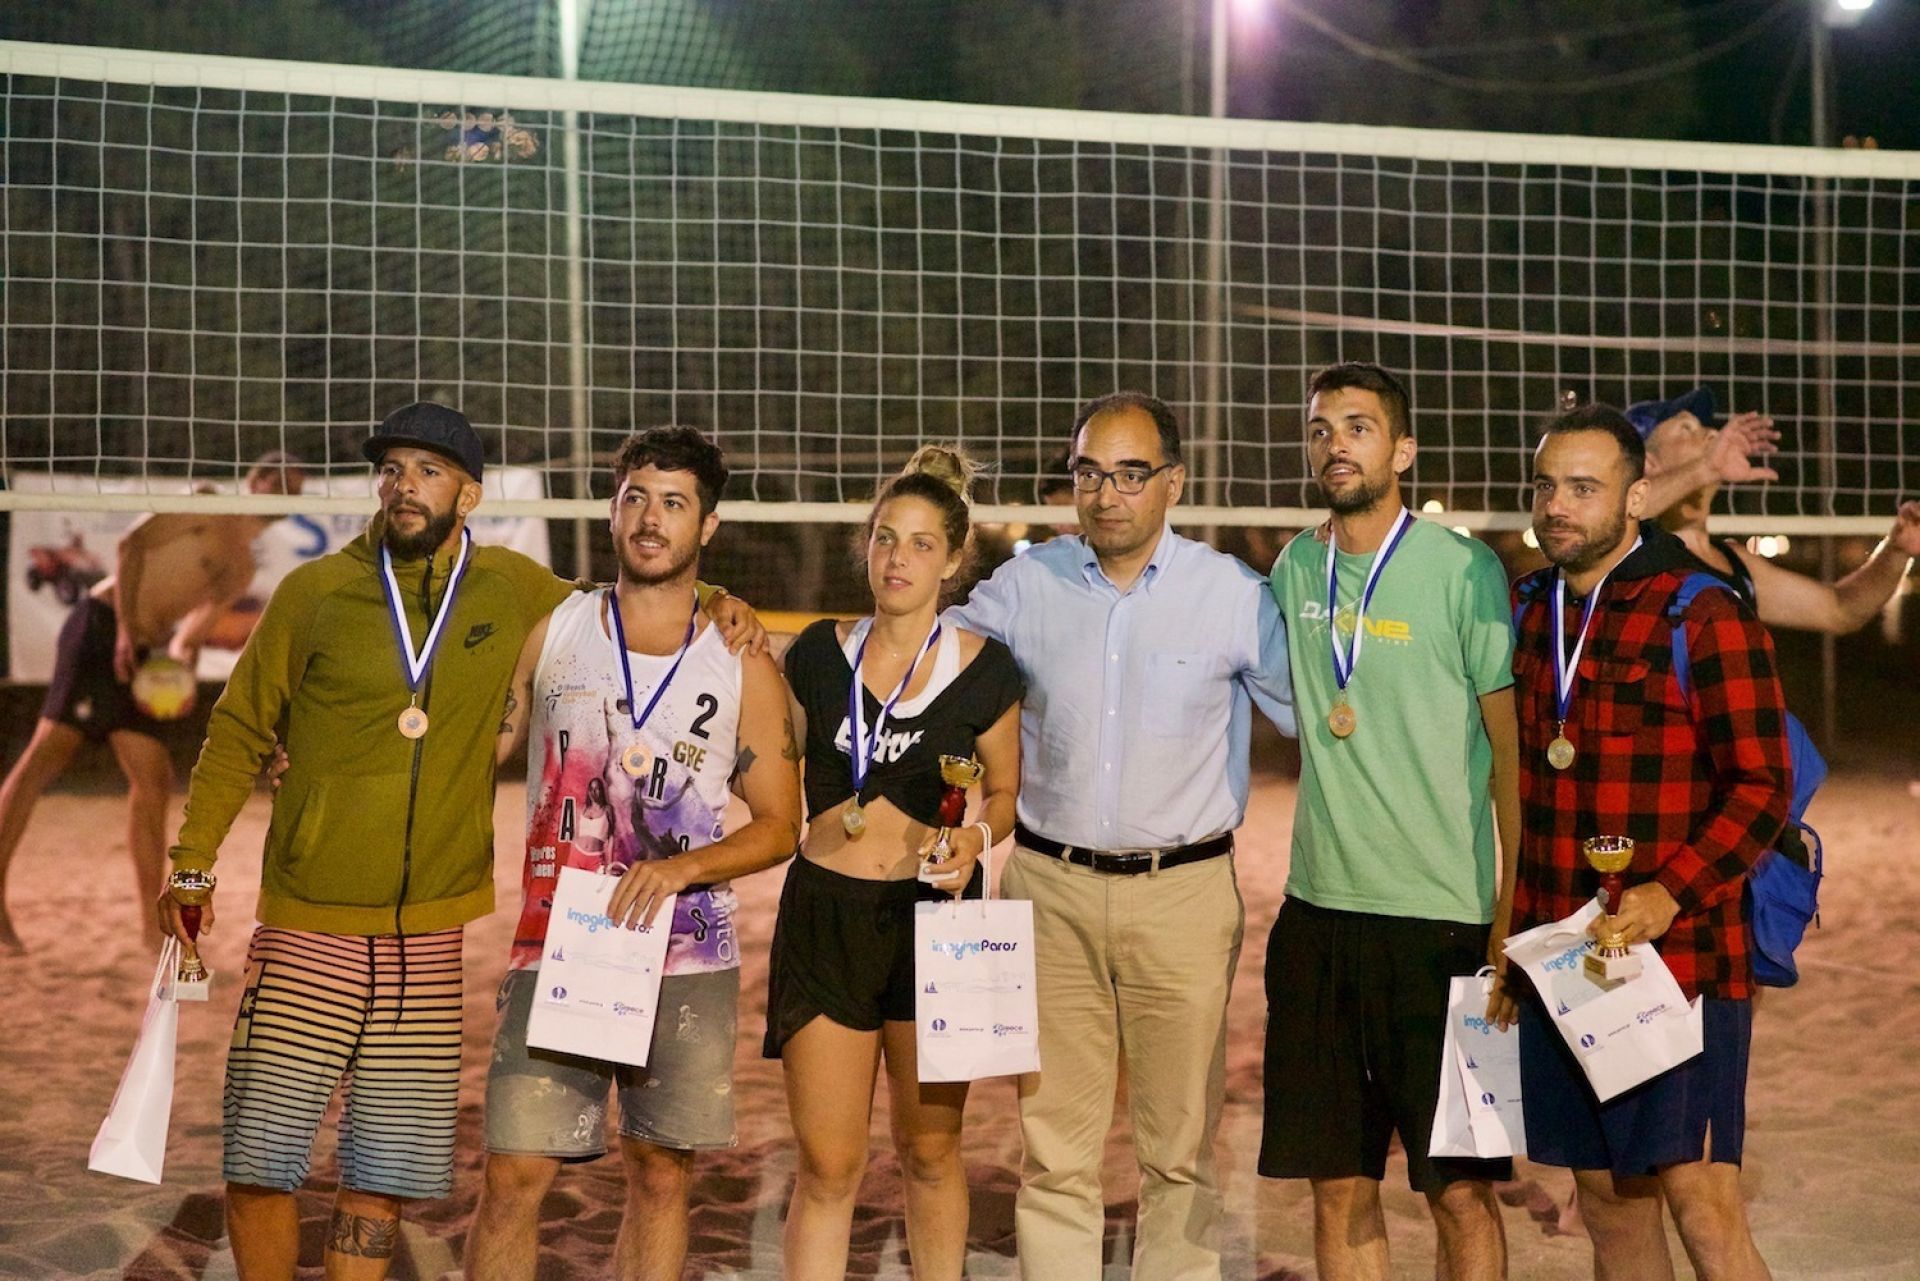 Περισσότεροι από 300 αθλητές συμμετείχαν στο τουρνουά beach volley της Πάρου